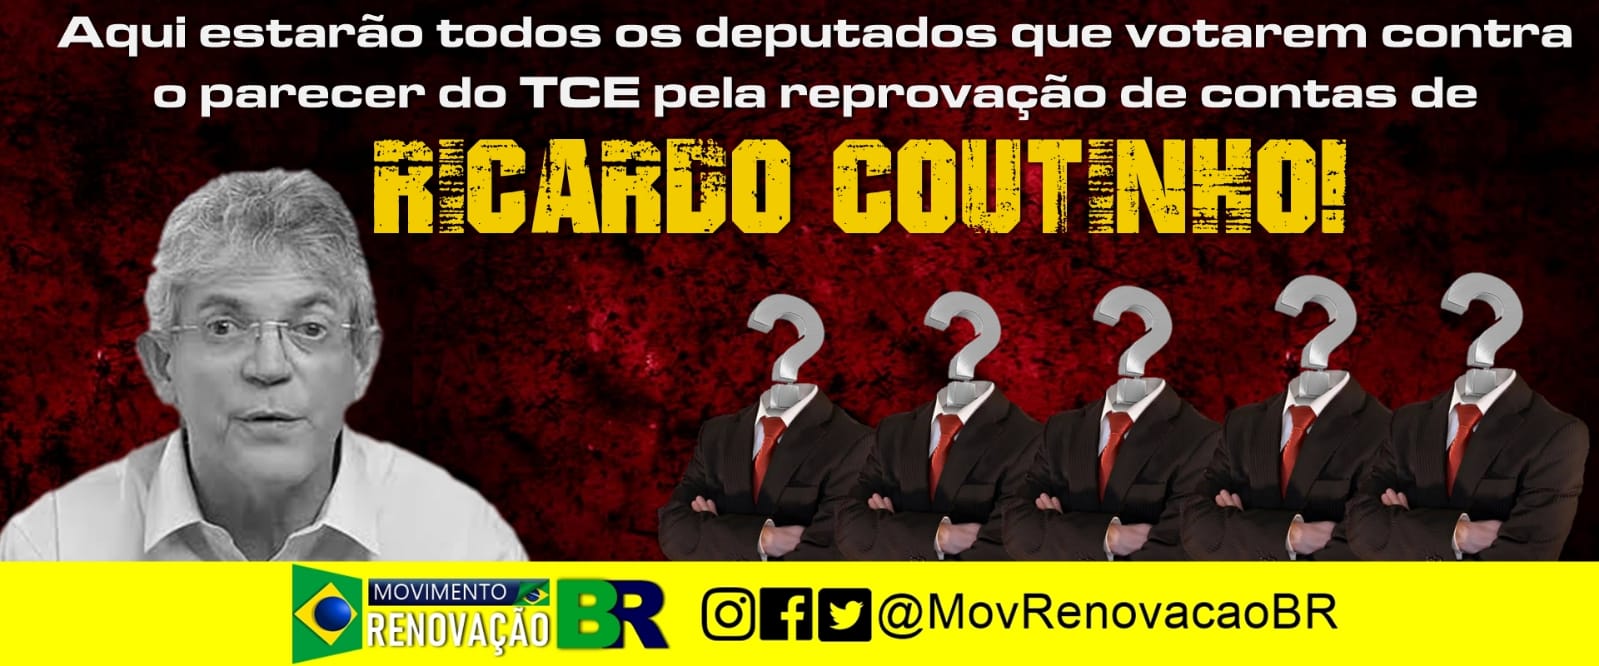 Movimento Renovação BR vai espalhar outdoors com a cara dos deputados que votarem contra o parecer do TCE que reprovou as contas de Ricardo Coutinho